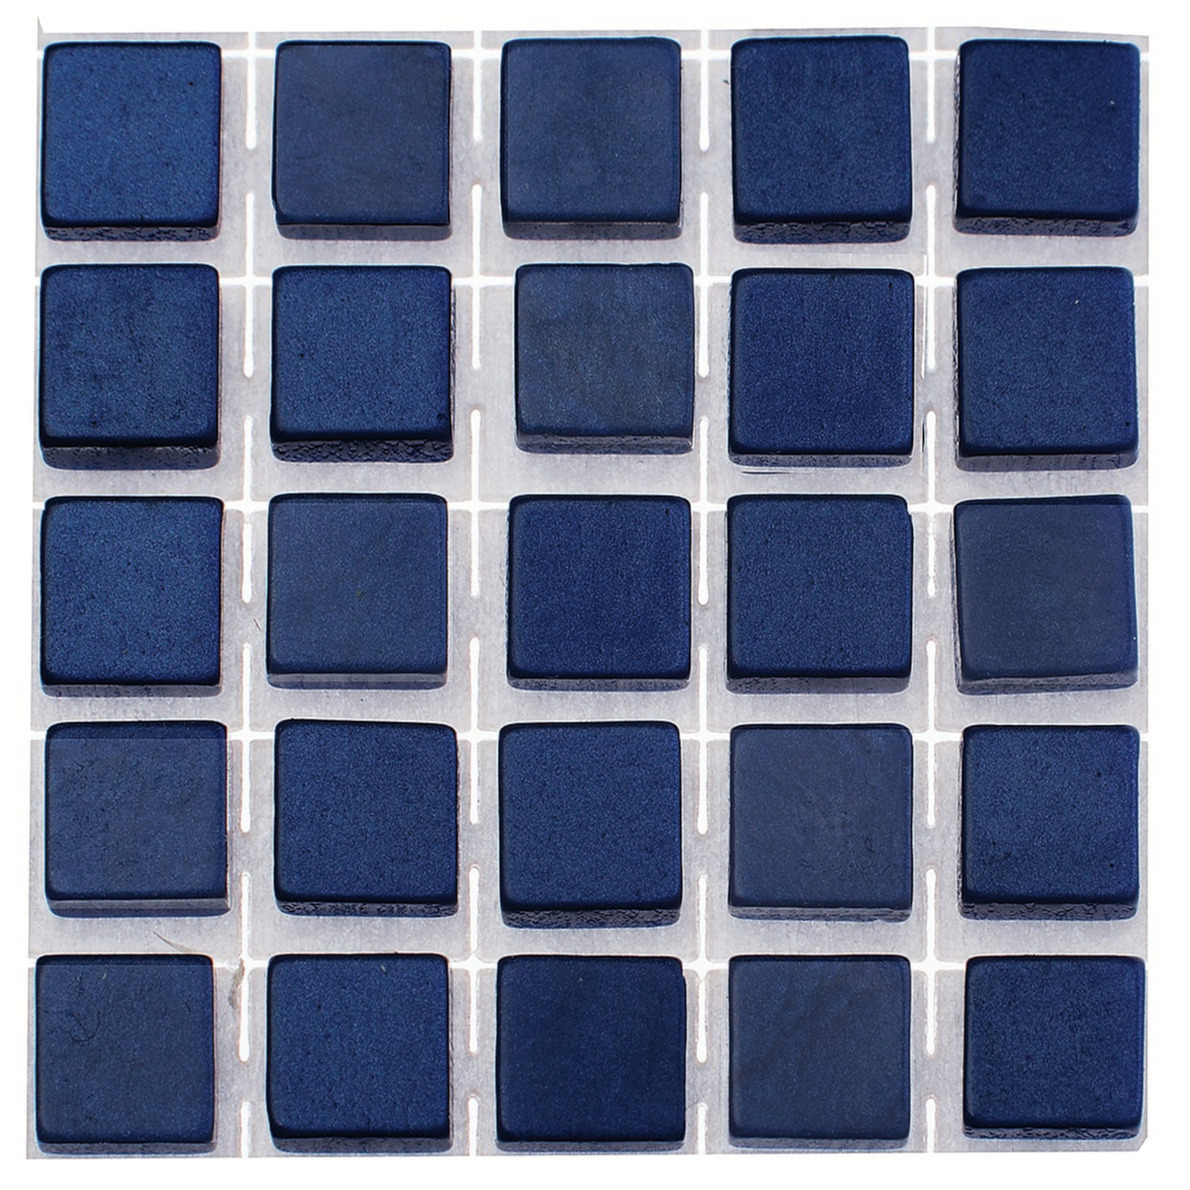 119x stuks mozaieken maken steentjes-tegels kleur donkerblauw 0.5 x 0.5 x 0.2 cm